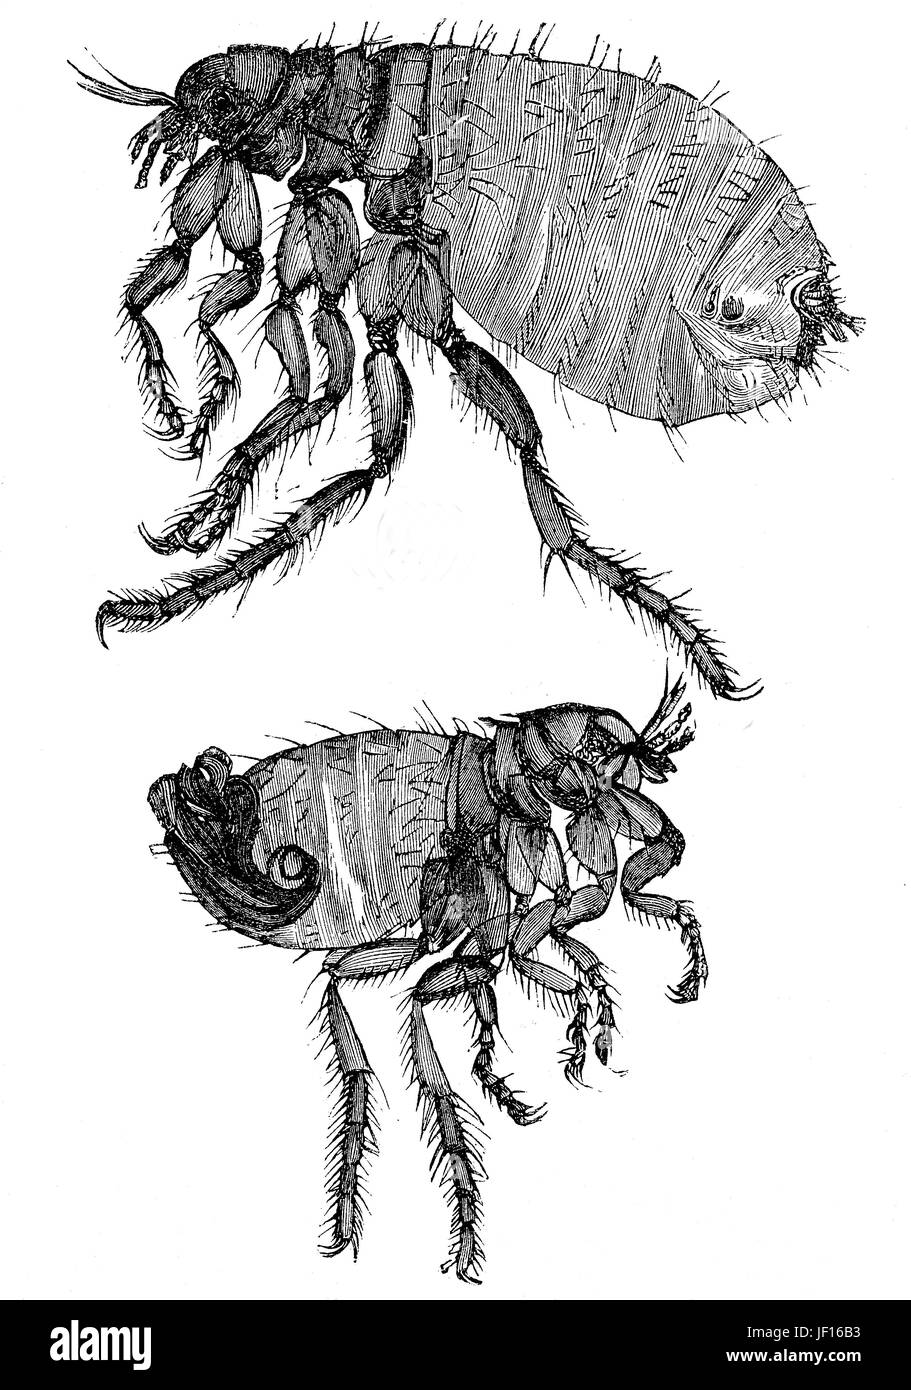 Illustrazione storica di una pulce di cane, Ctenocephalides canis, top è un maschio di insetto, fondo una femmina, Digitale riproduzione migliorata da un originale stampa dal 1888 Foto Stock